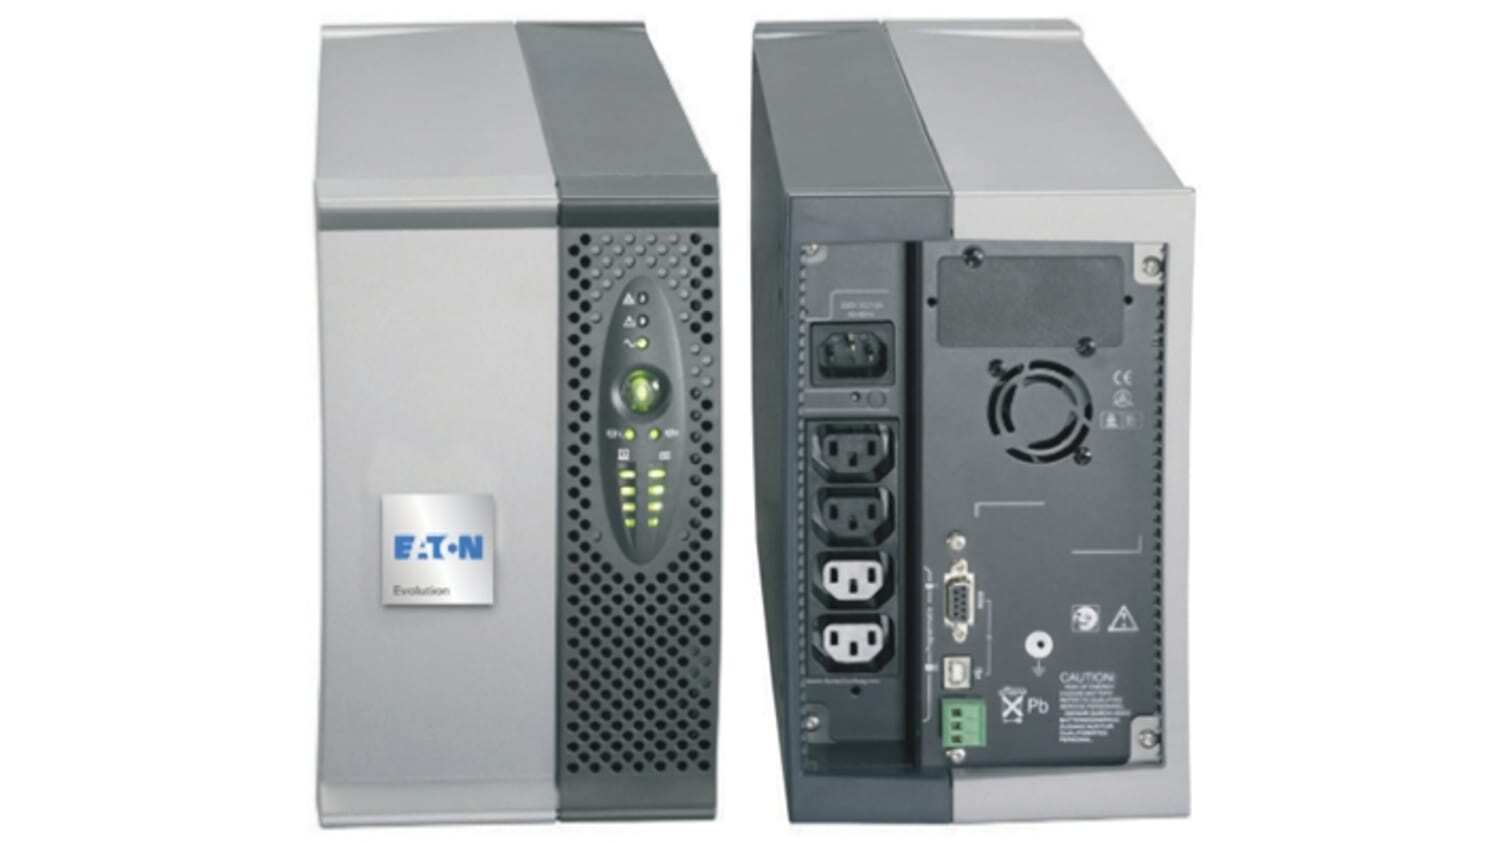 Eaton Evolution 1150 UPS - Proteggi i tuoi dispositivi informatici con 770W di potenza